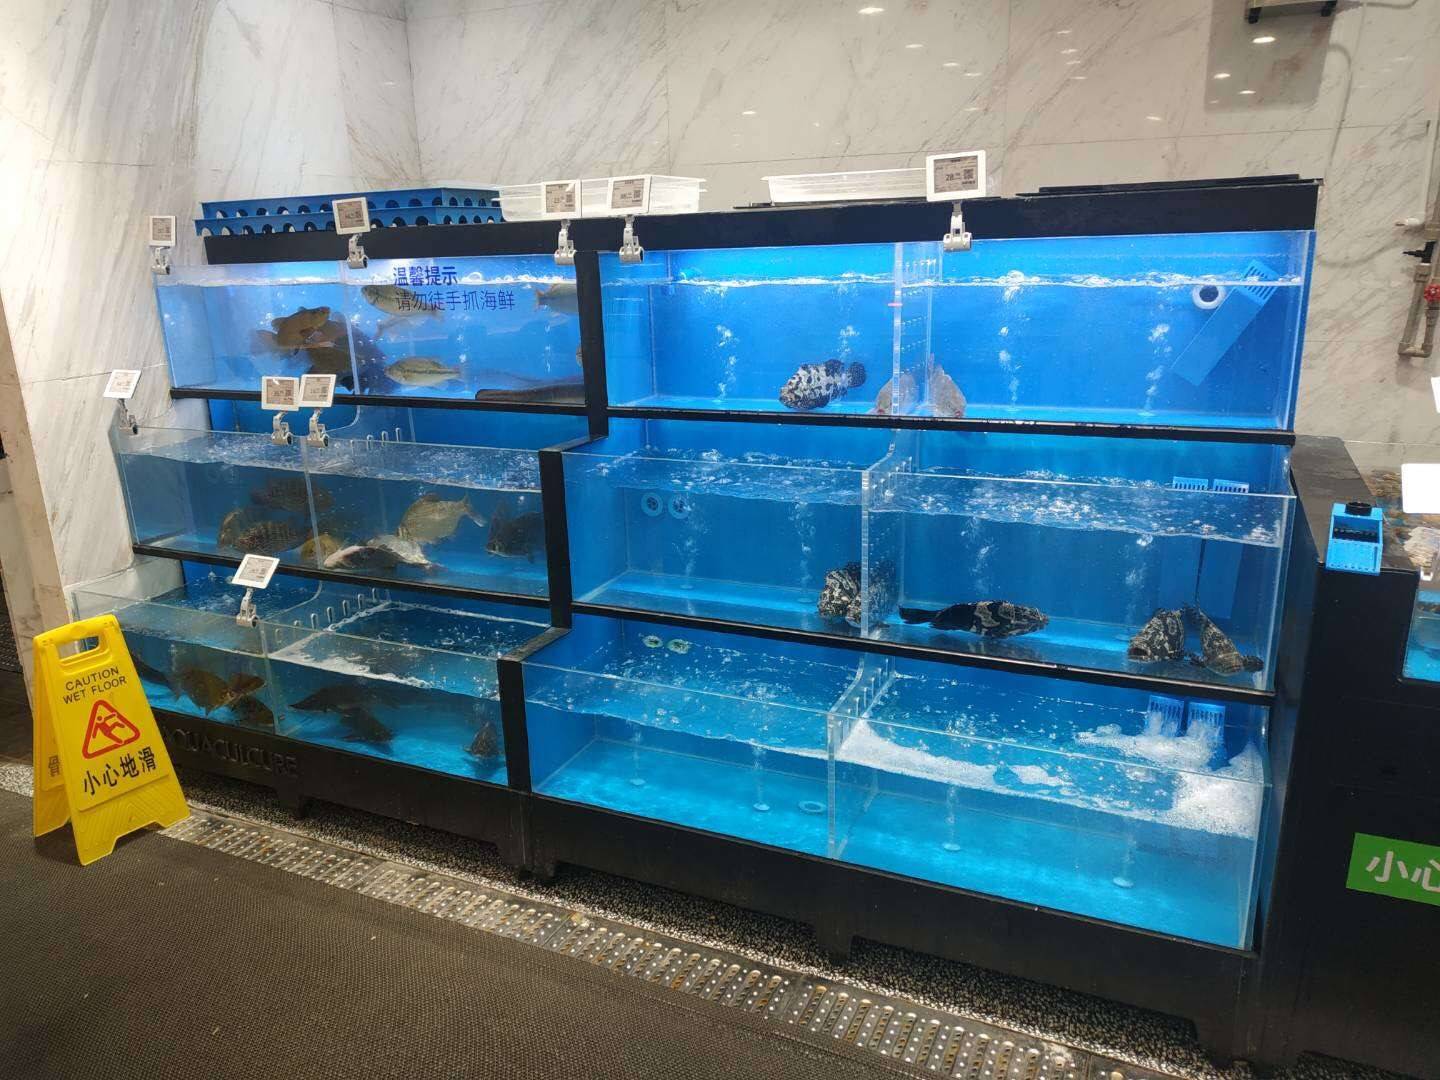 荆州县盒马鲜生海鲜池鱼缸销售